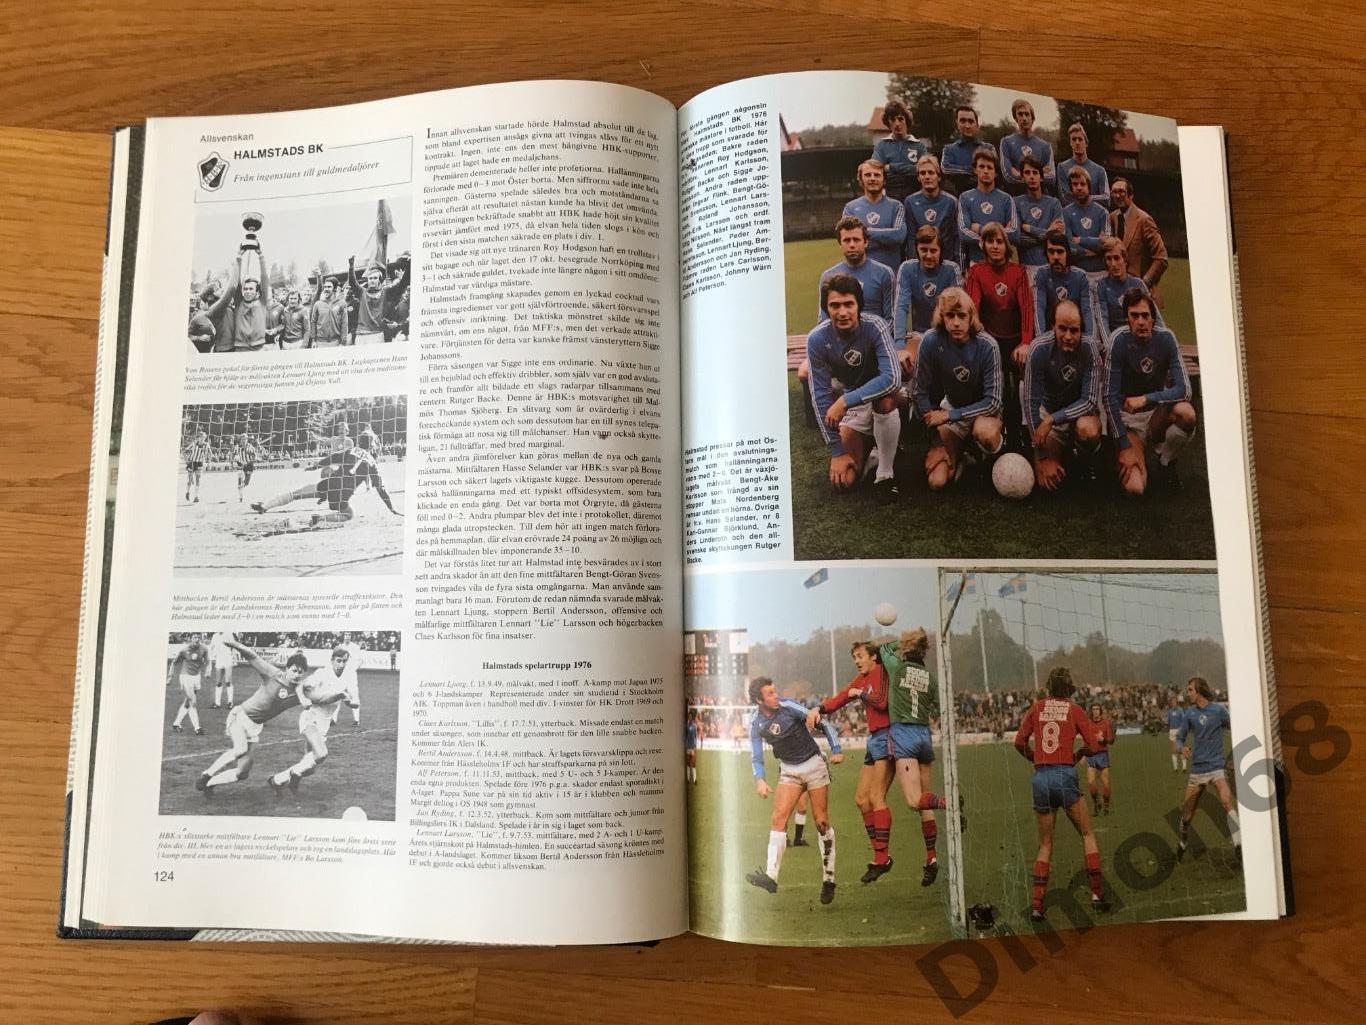 Энциклопедия шведского футбола, фото команд всех шведских региональных лиг 4